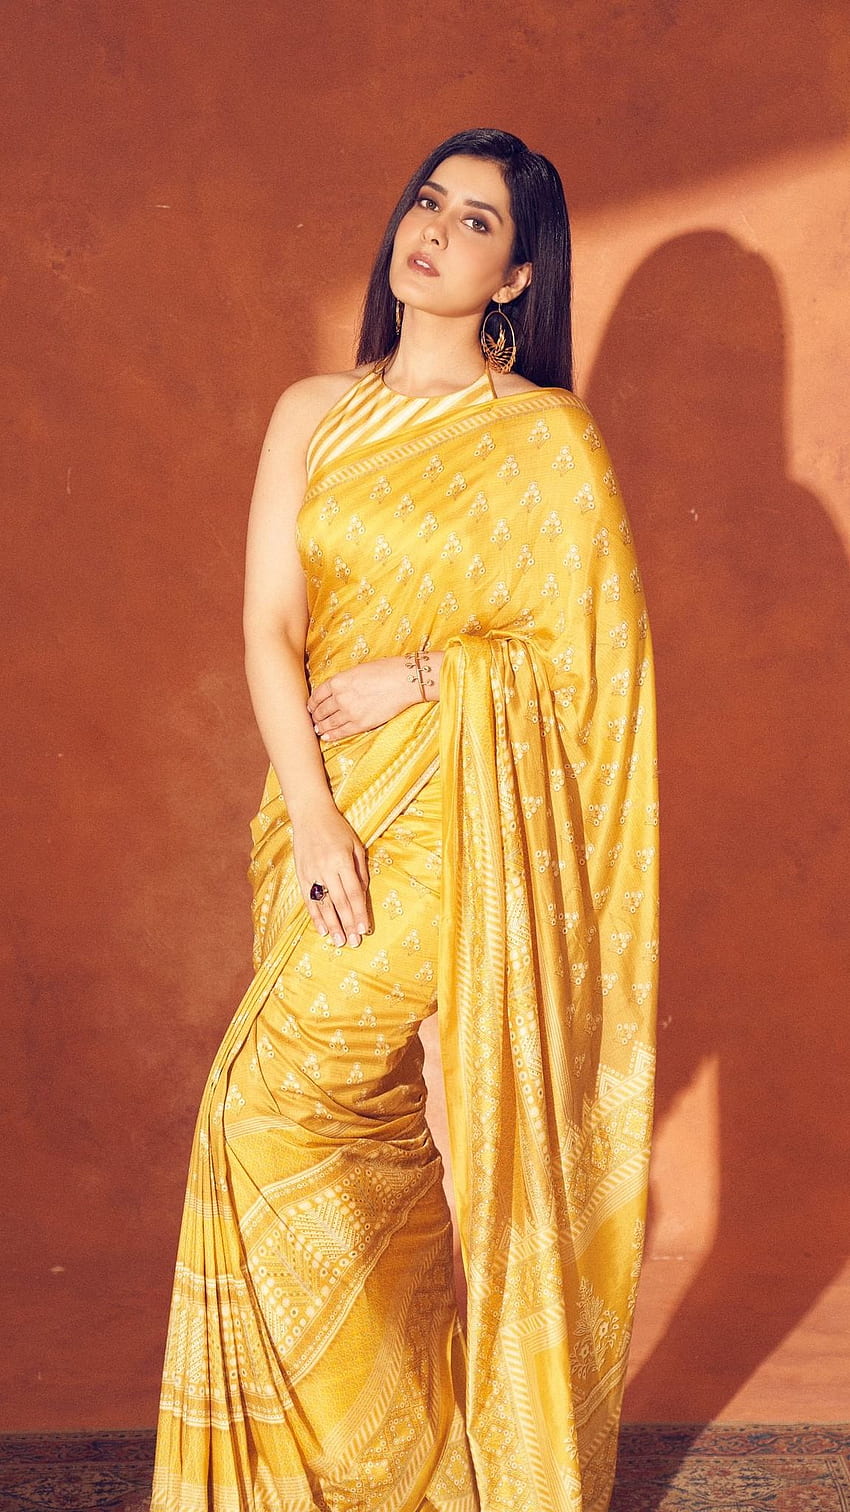 Raasi khanna, saree beauty, telugu actress HD phone wallpaper